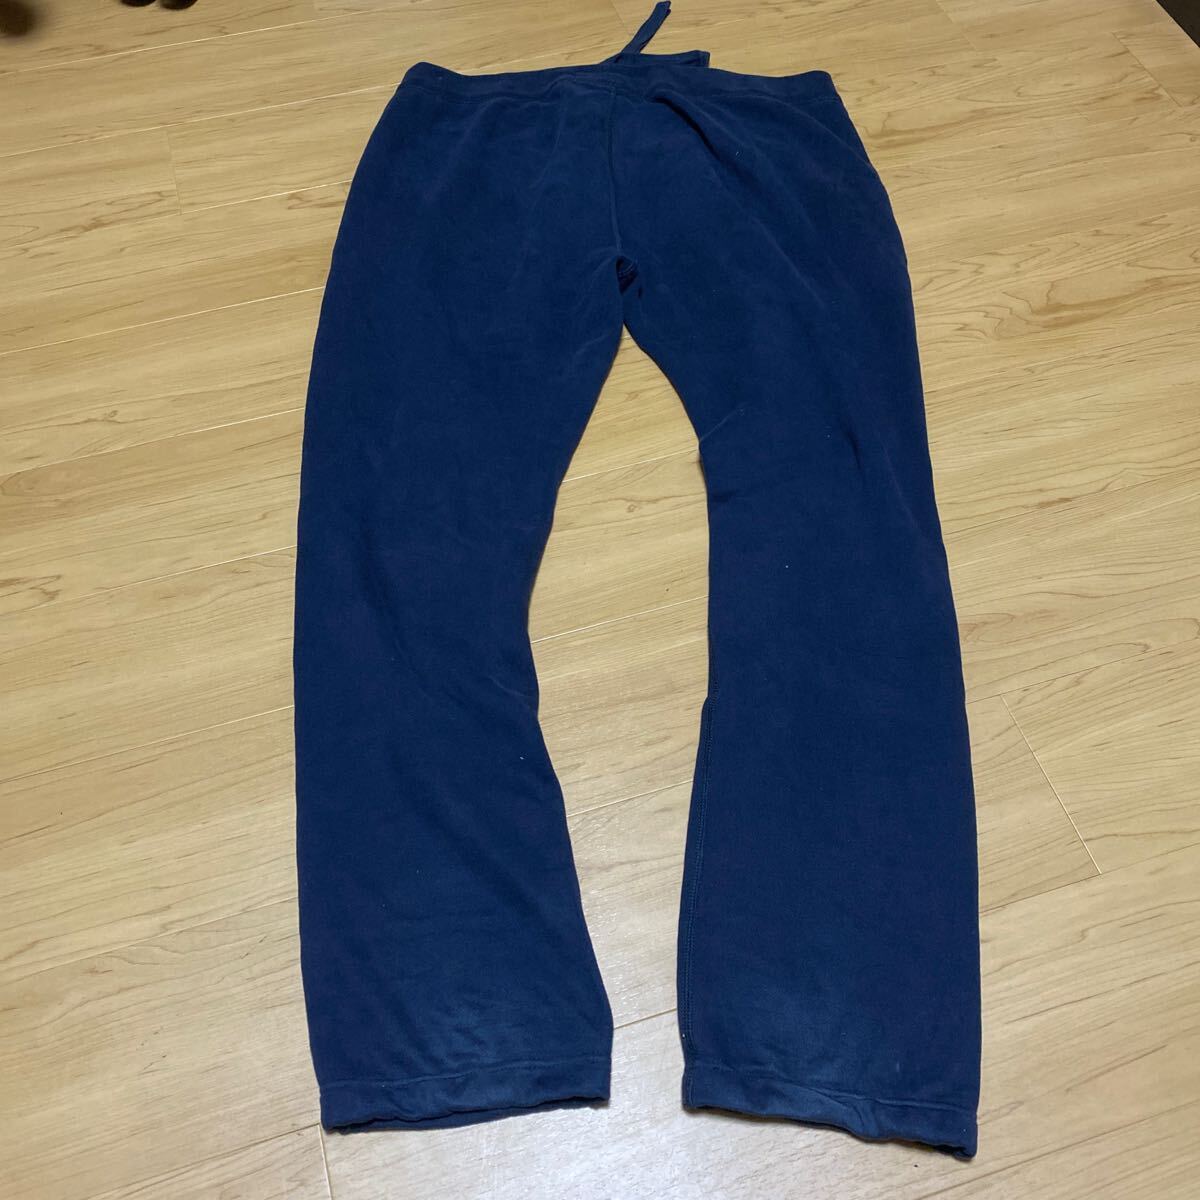  Abercrombie & Fitch sweat pants pants XL Abercrombie & Fitch men's regular goods strut 